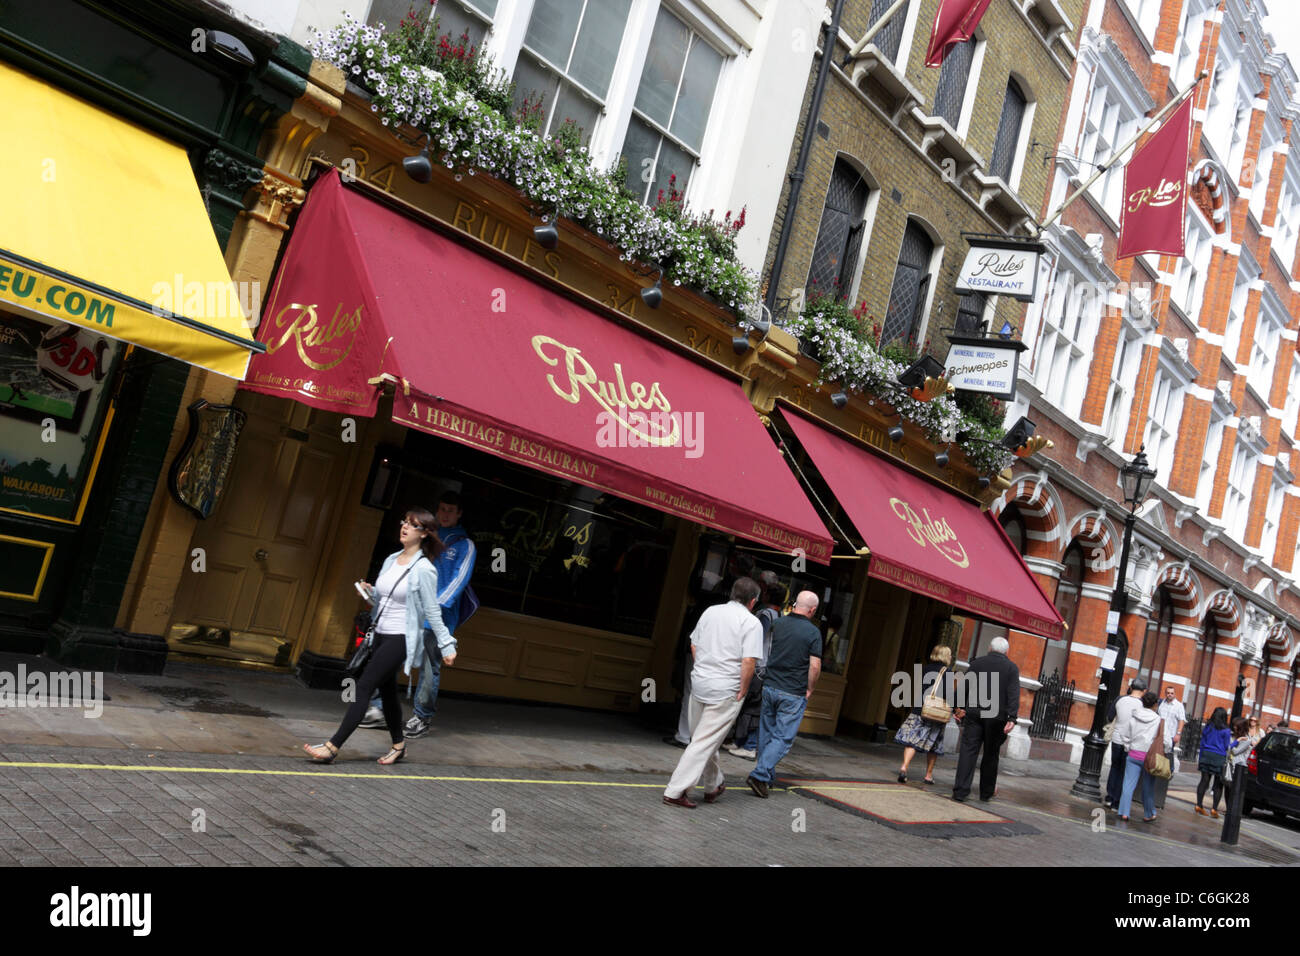 Regeln Restaurant ist das älteste Restaurant in London, im späten 18. Jahrhundert. Stockfoto